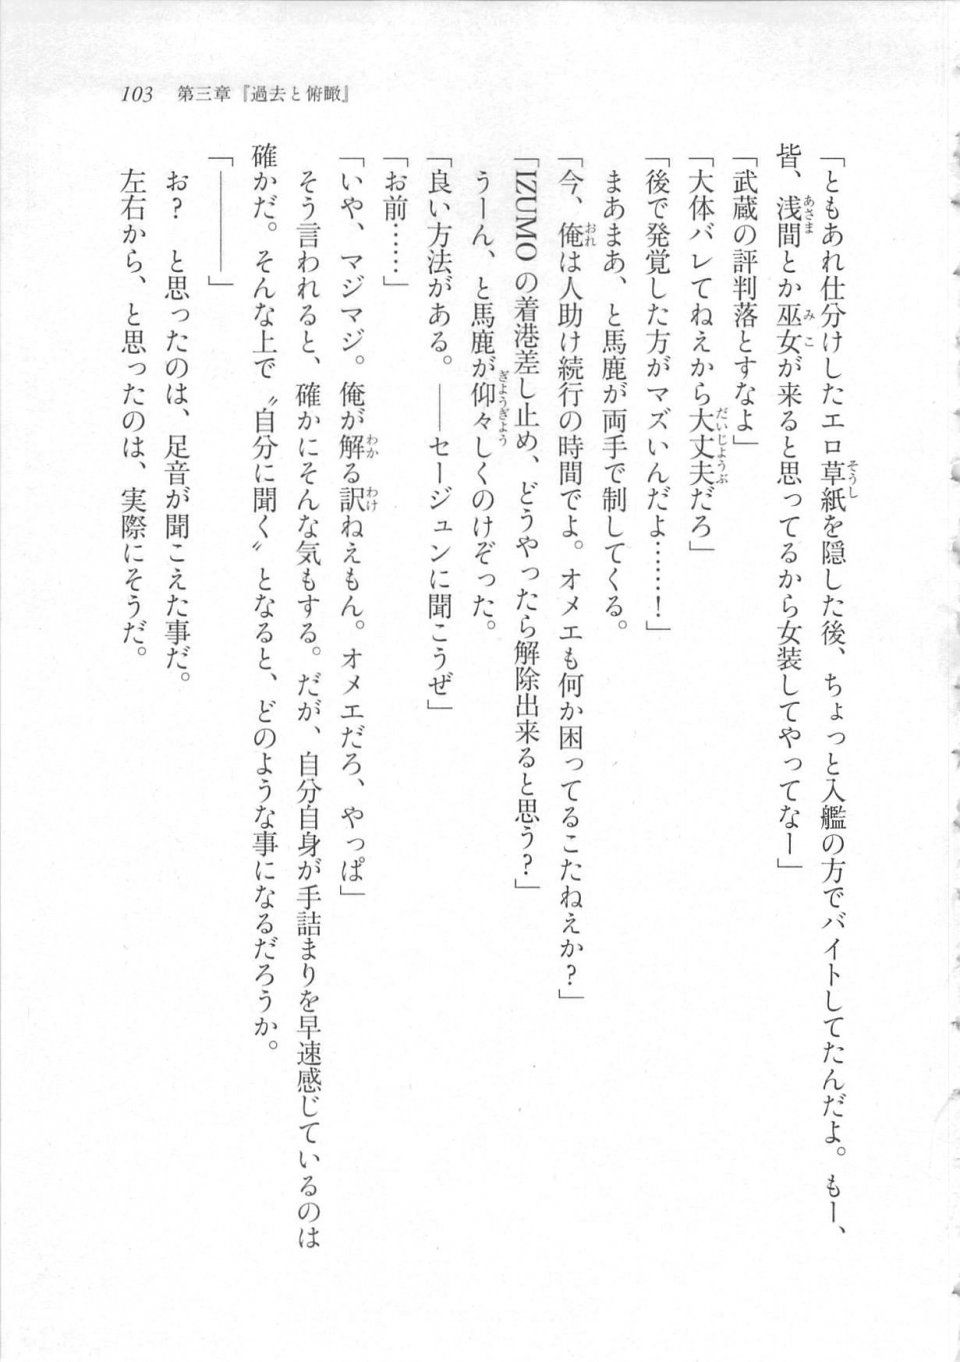 Kyoukai Senjou no Horizon LN Sidestory Vol 3 - Photo #107